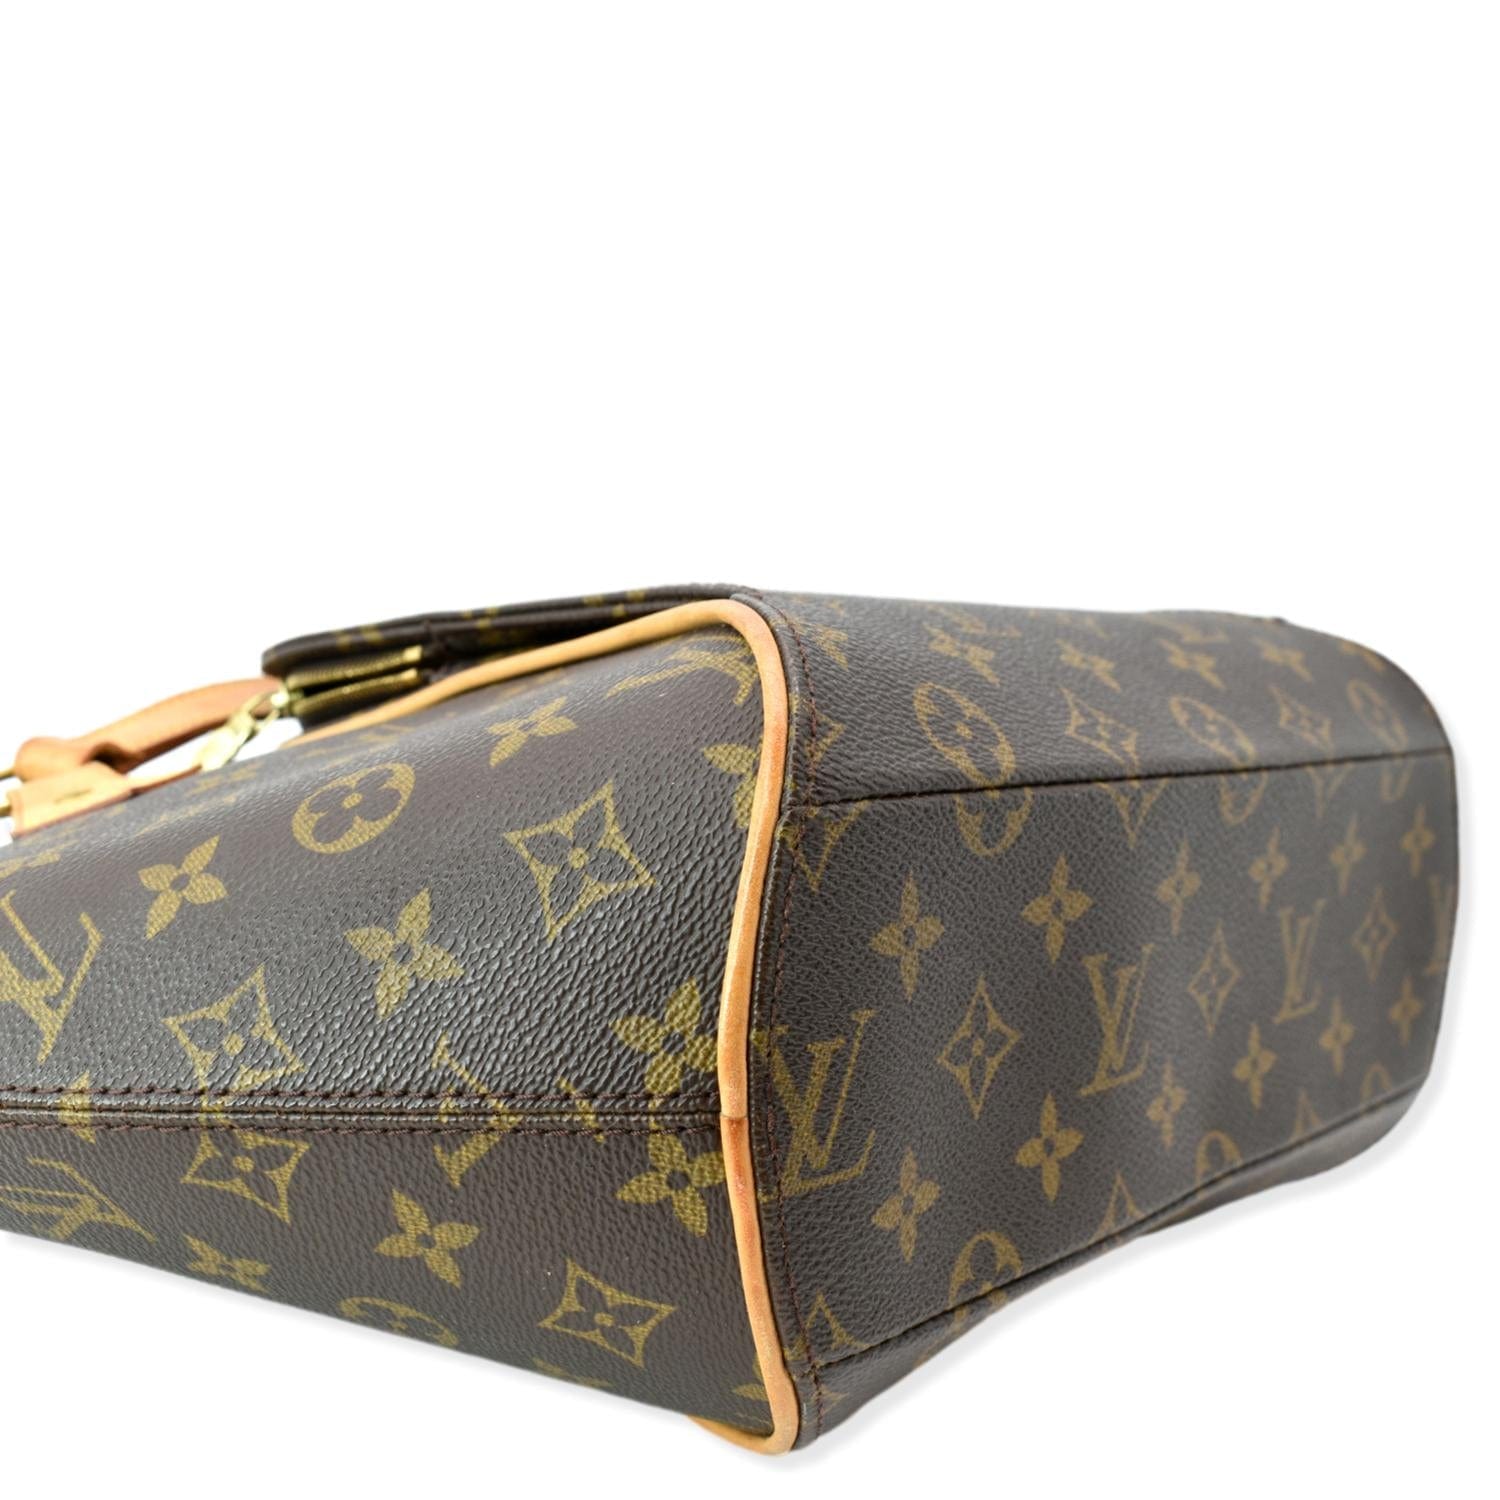 Louis Vuitton Ellipse Bag Monogram Canvas GM Brown 22126954